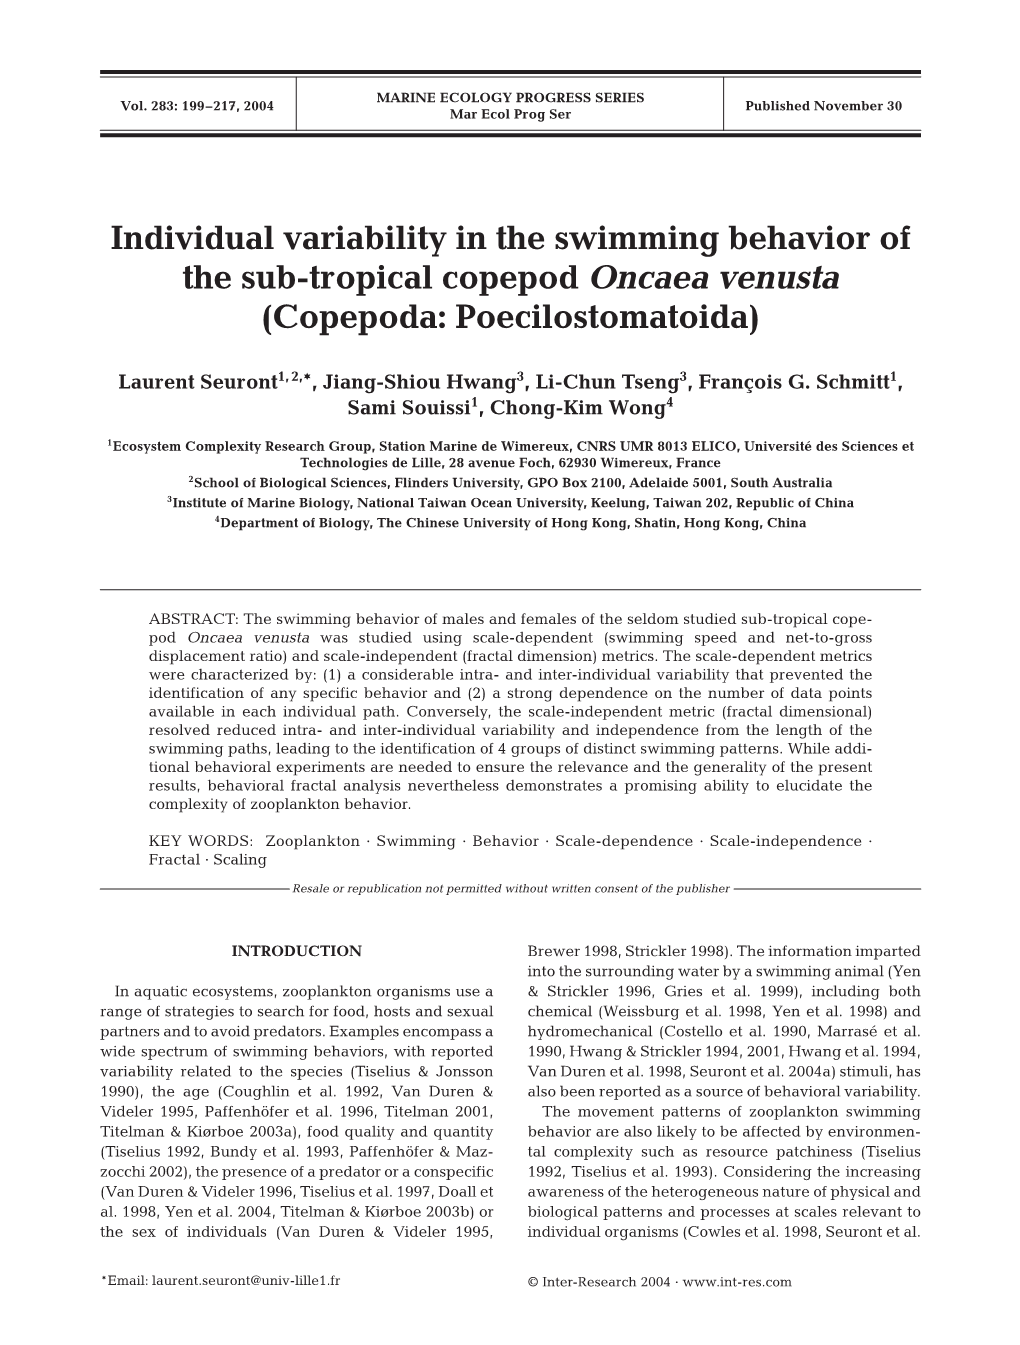 Individual Variability in the Swimming Behavior of the Sub-Tropical Copepod Oncaea Venusta (Copepoda: Poecilostomatoida)